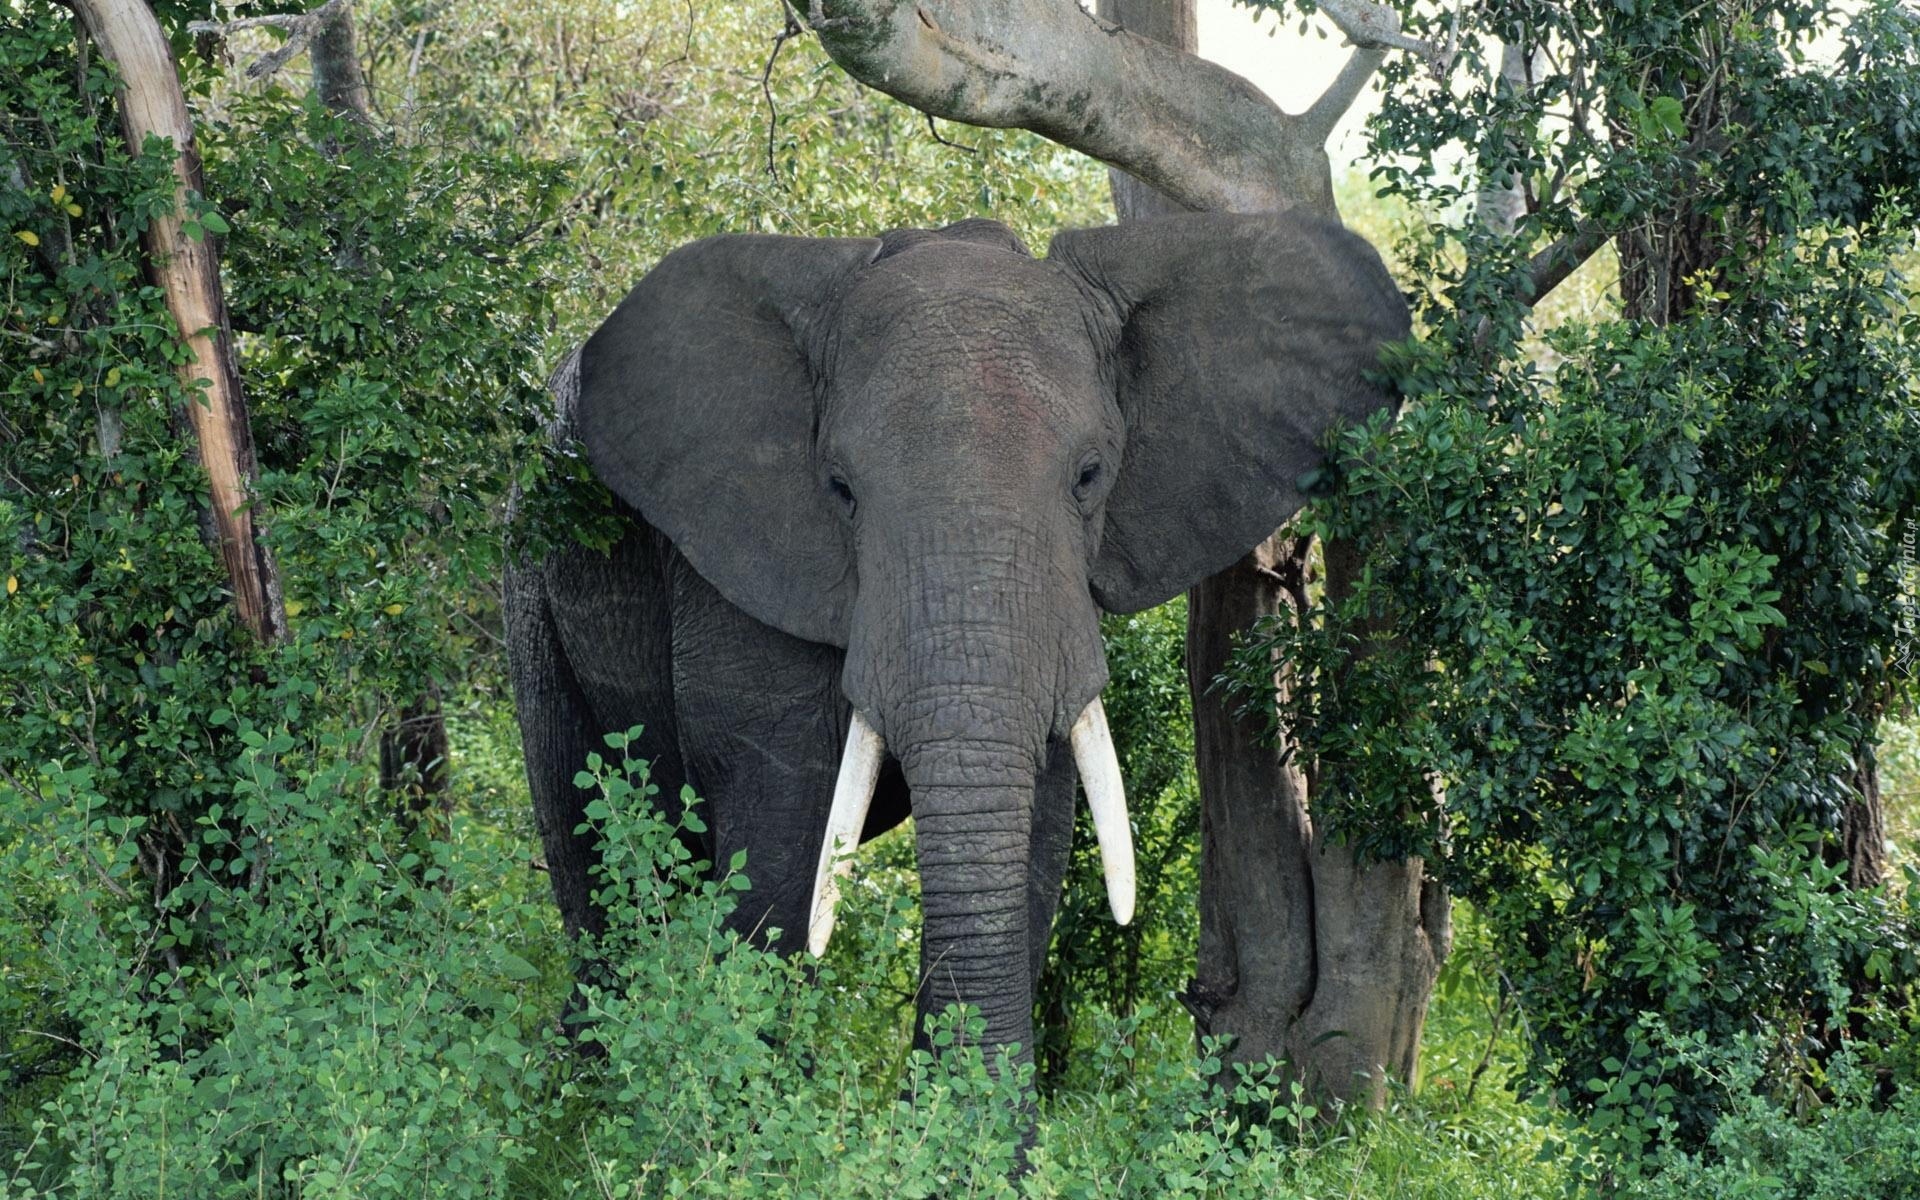 Słonie, Sawanna, Afryka